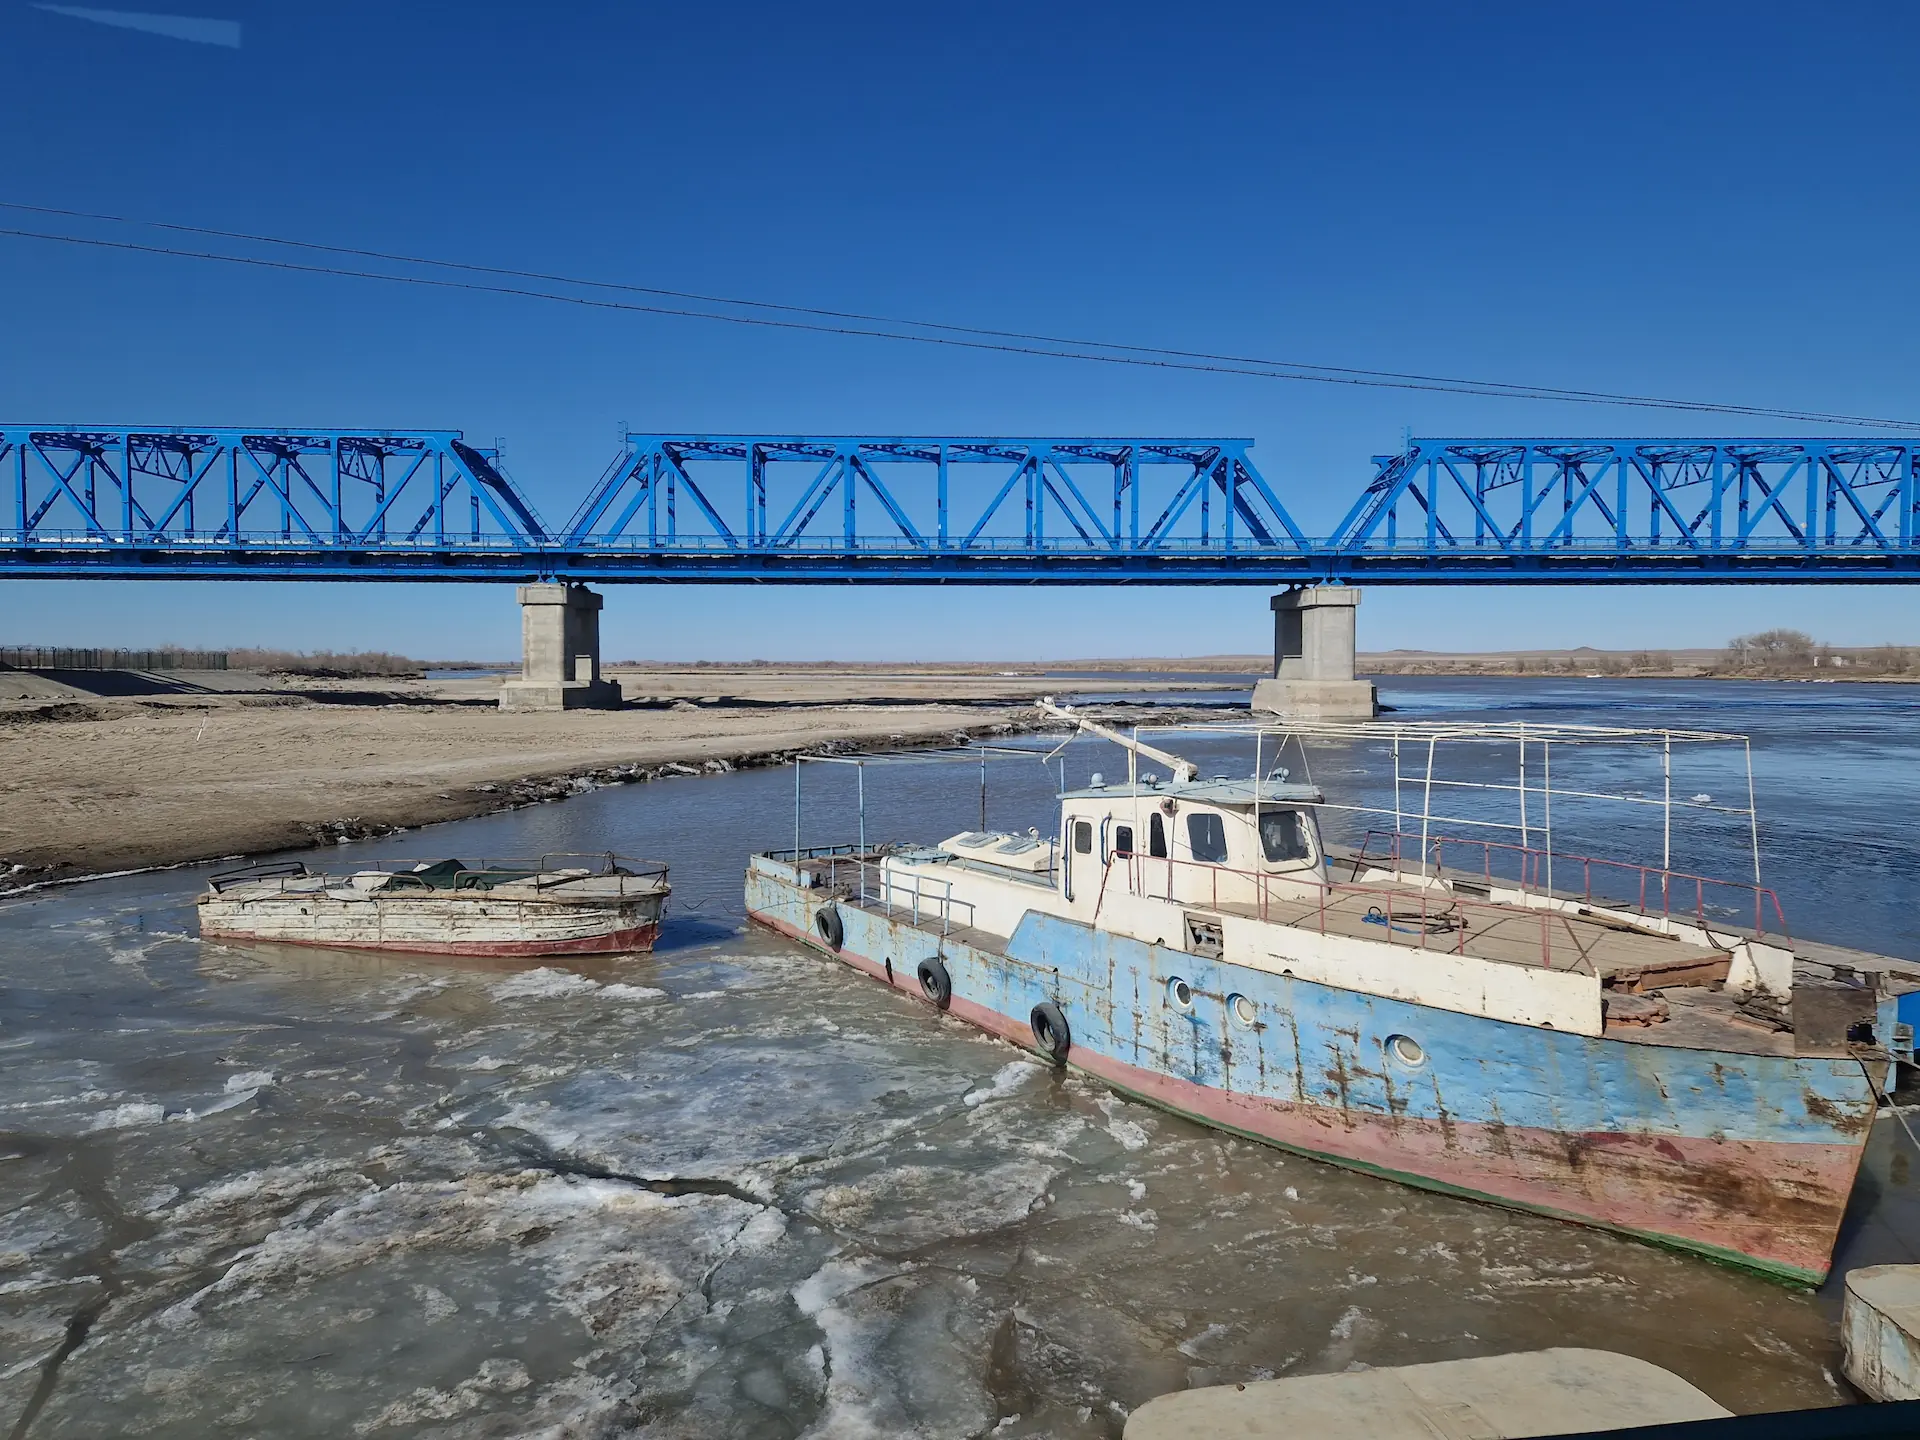 On traverse le pont de l'Amou-Darya dont les morceaux gelés s'éloignent en flottant aux côtés d'un bateau. En fond, un autre pont bleu.